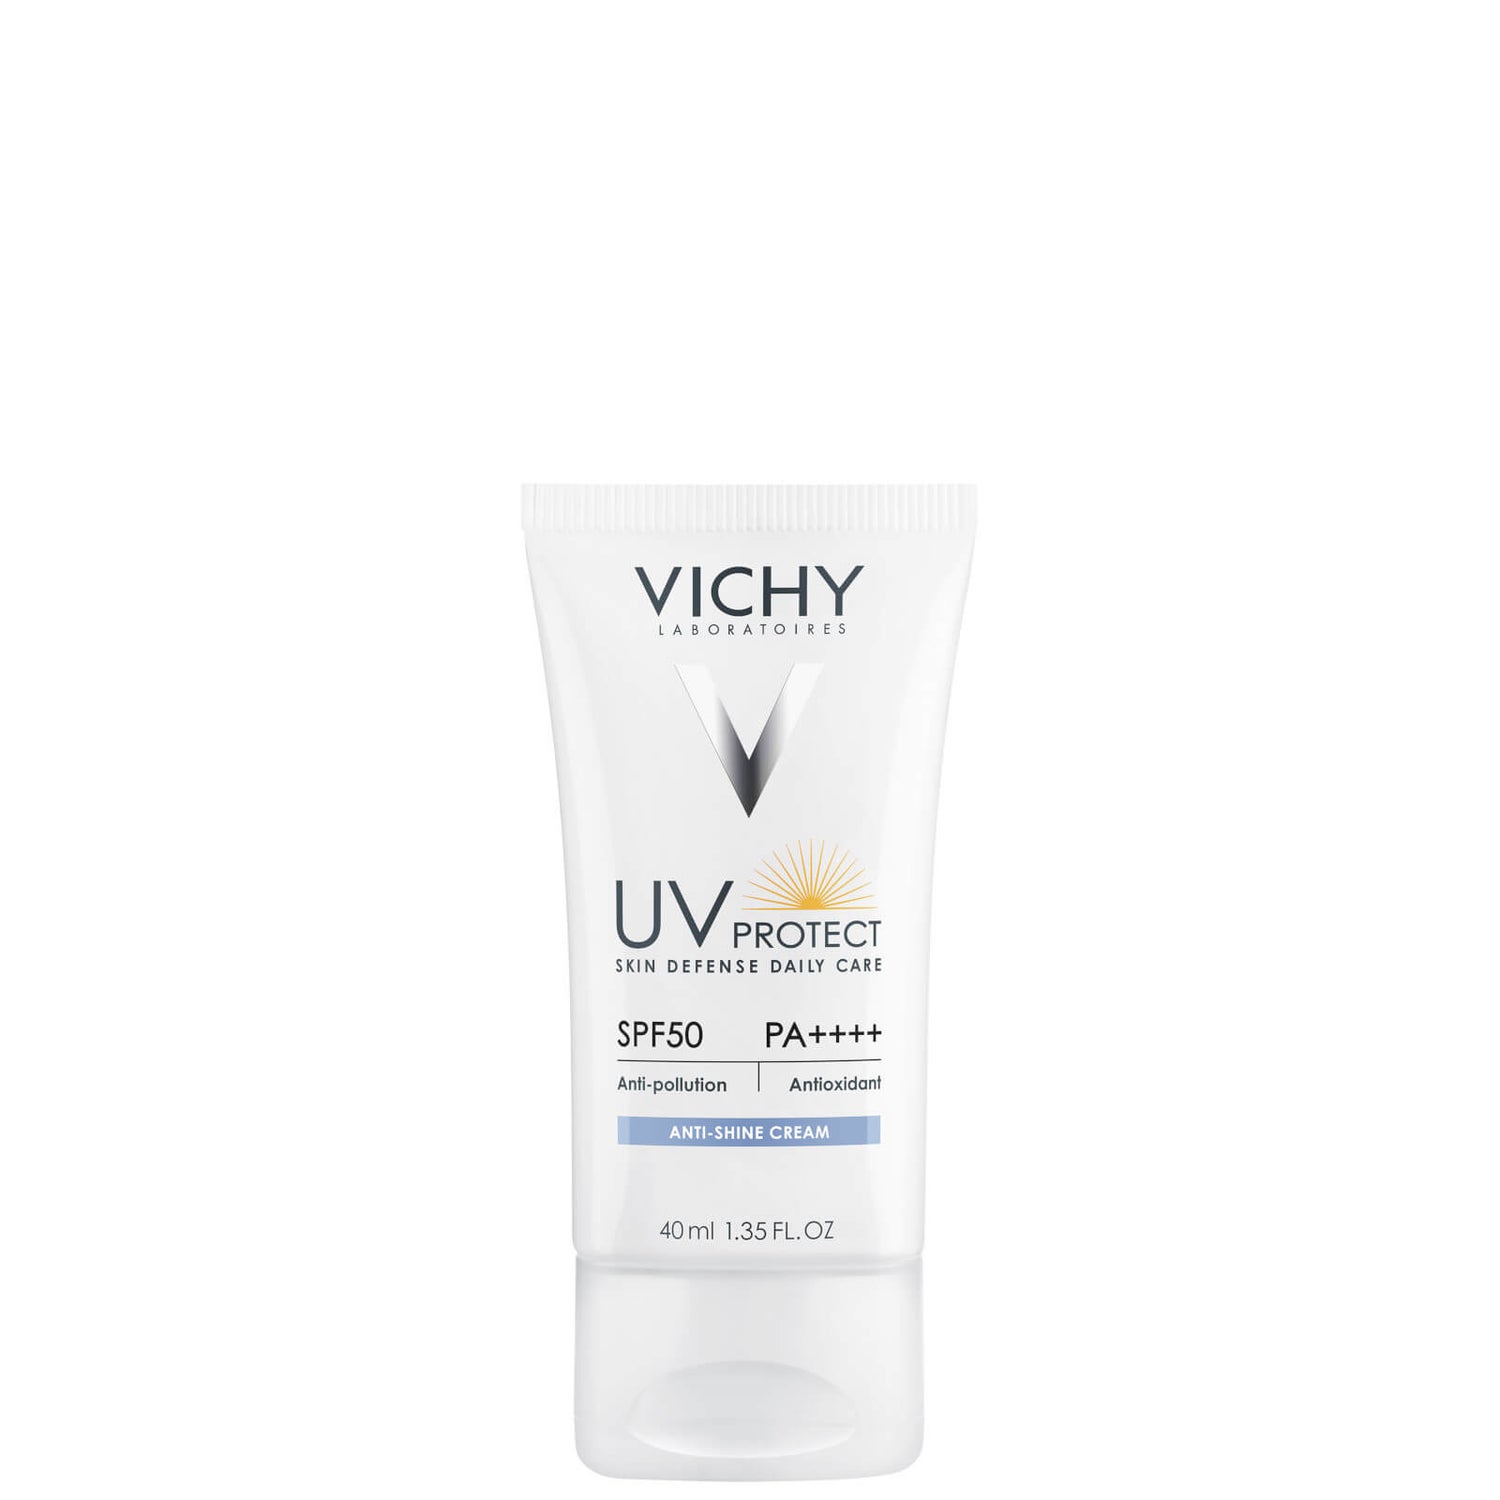 VICHY イデアル ソレイユ UVプロテクト アンチシャイン クリーム SPF50 40ml